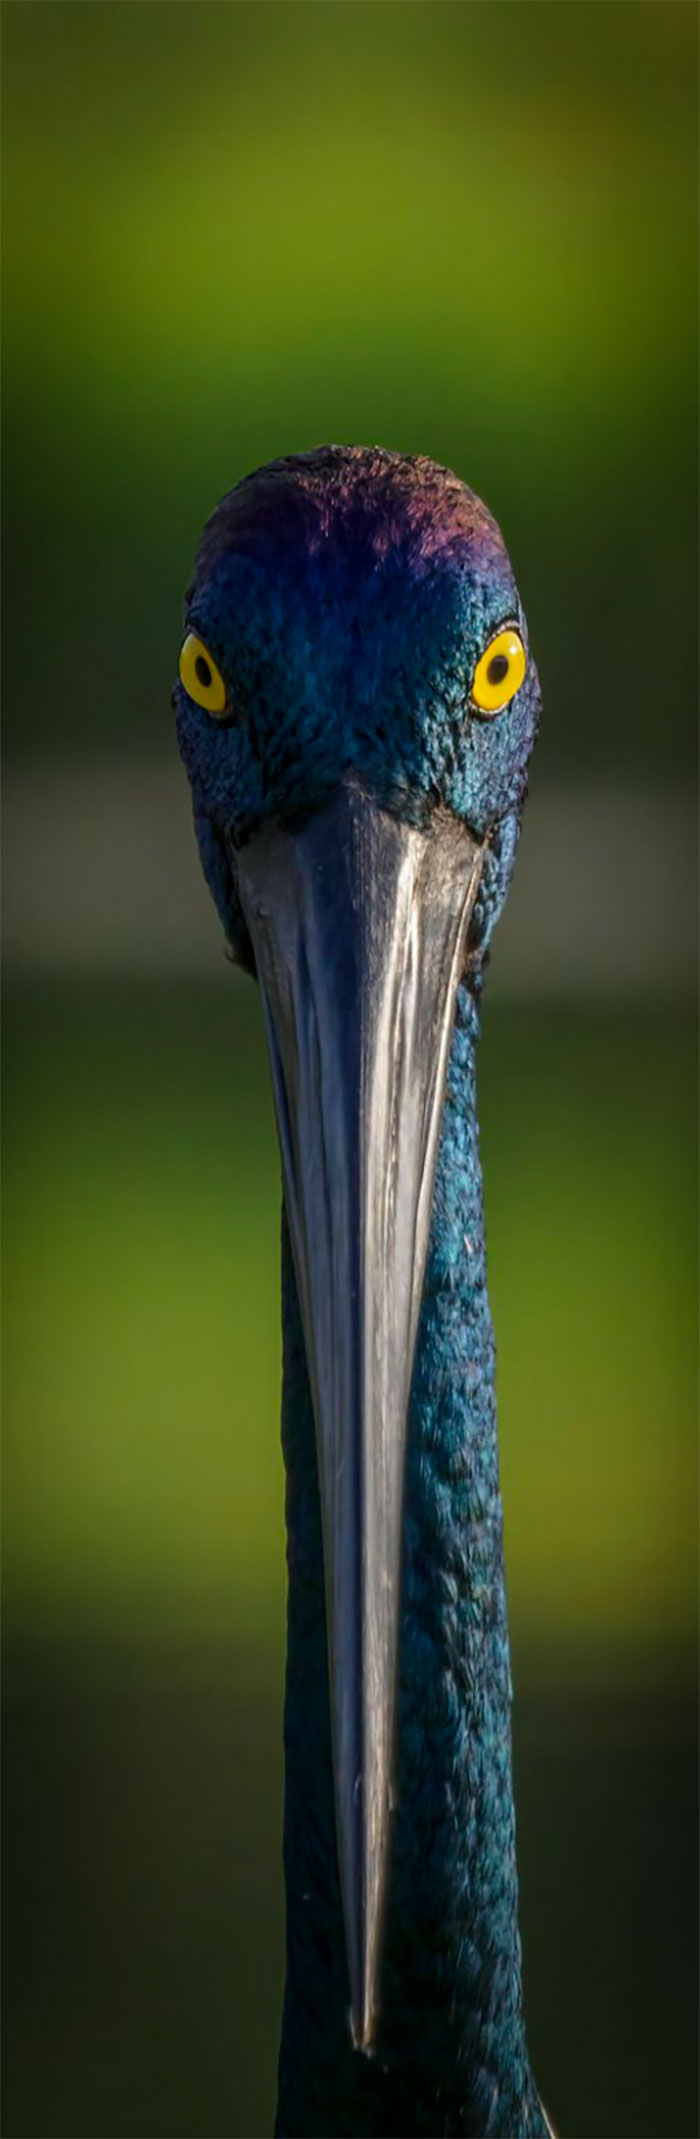 Bird Portrait: "The Eyes Have" It By Michelle Gardner (Shortlist)